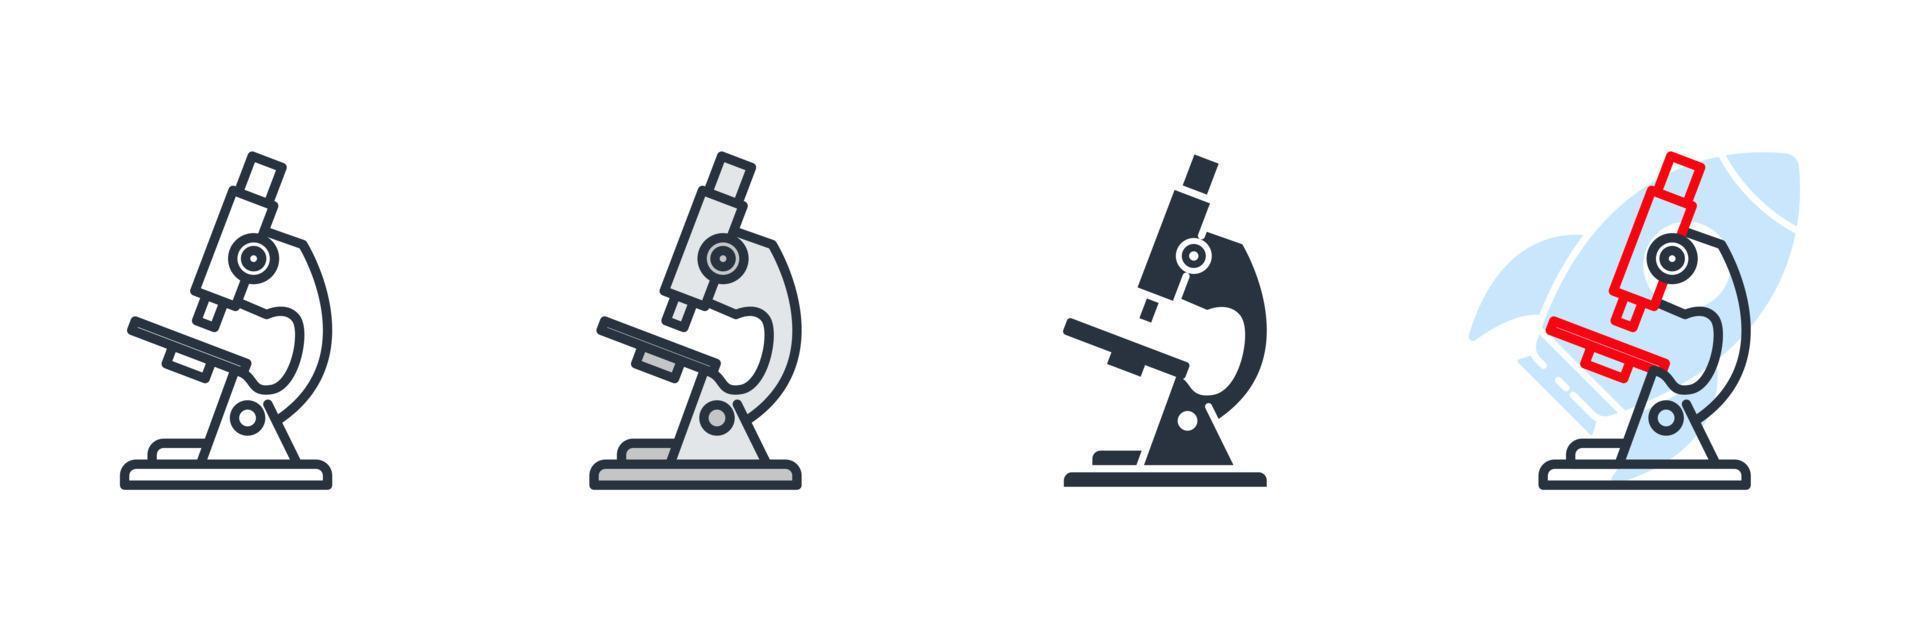 ilustración vectorial del logotipo del icono del microscopio. plantilla de símbolo de investigación para la colección de diseño gráfico y web vector